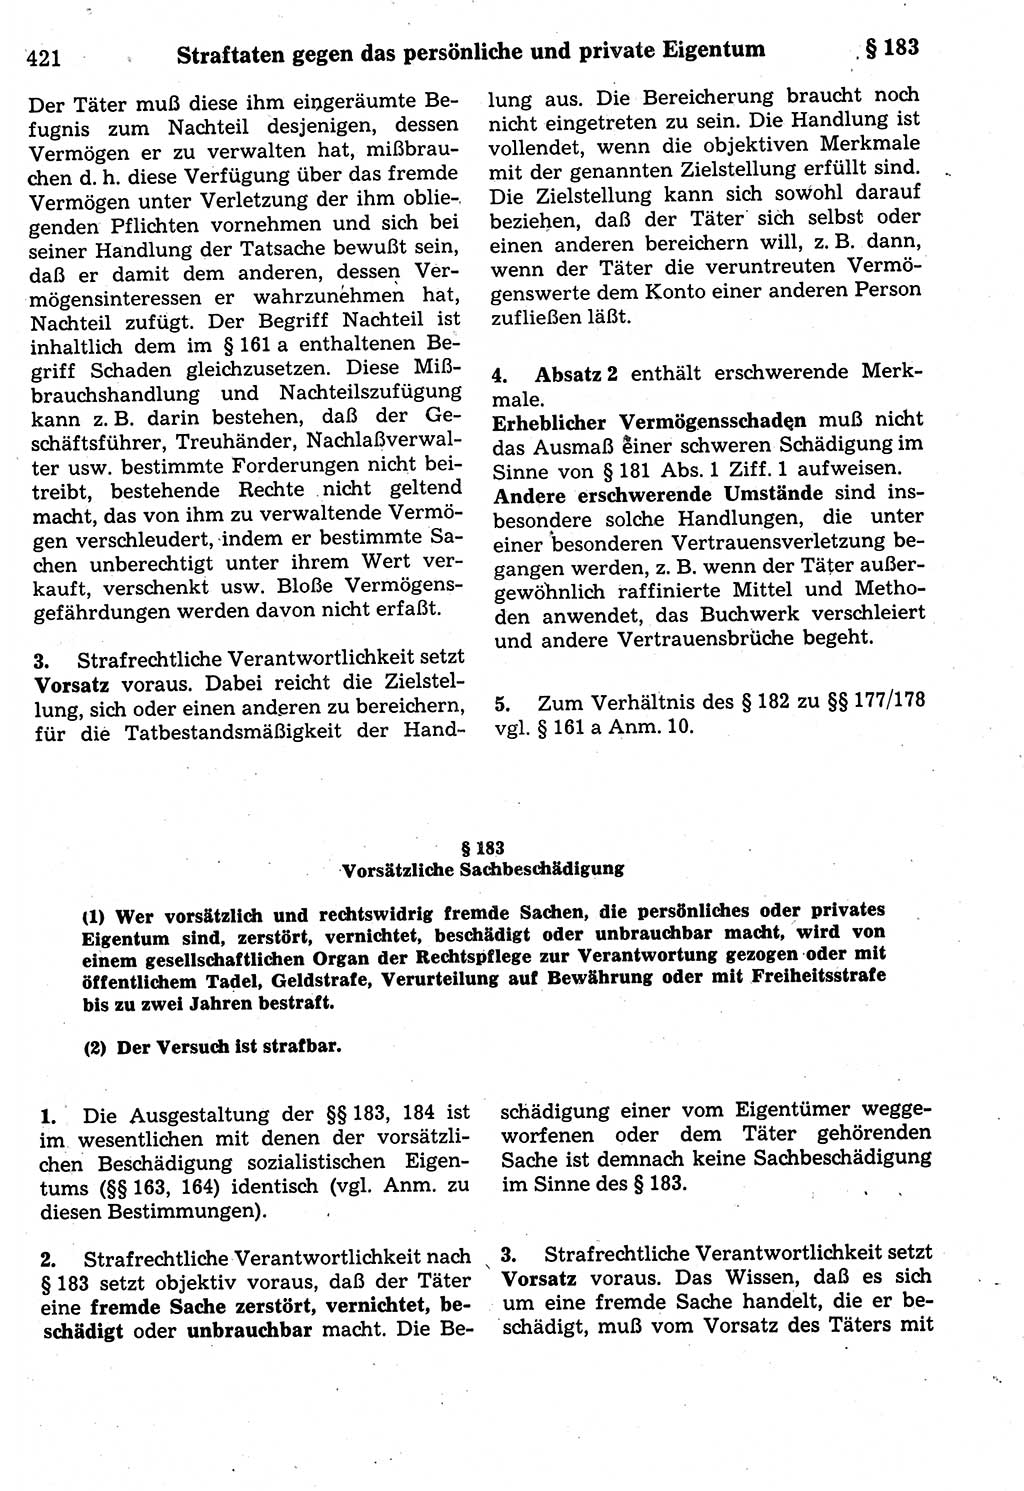 Strafrecht der Deutschen Demokratischen Republik (DDR), Kommentar zum Strafgesetzbuch (StGB) 1987, Seite 421 (Strafr. DDR Komm. StGB 1987, S. 421)